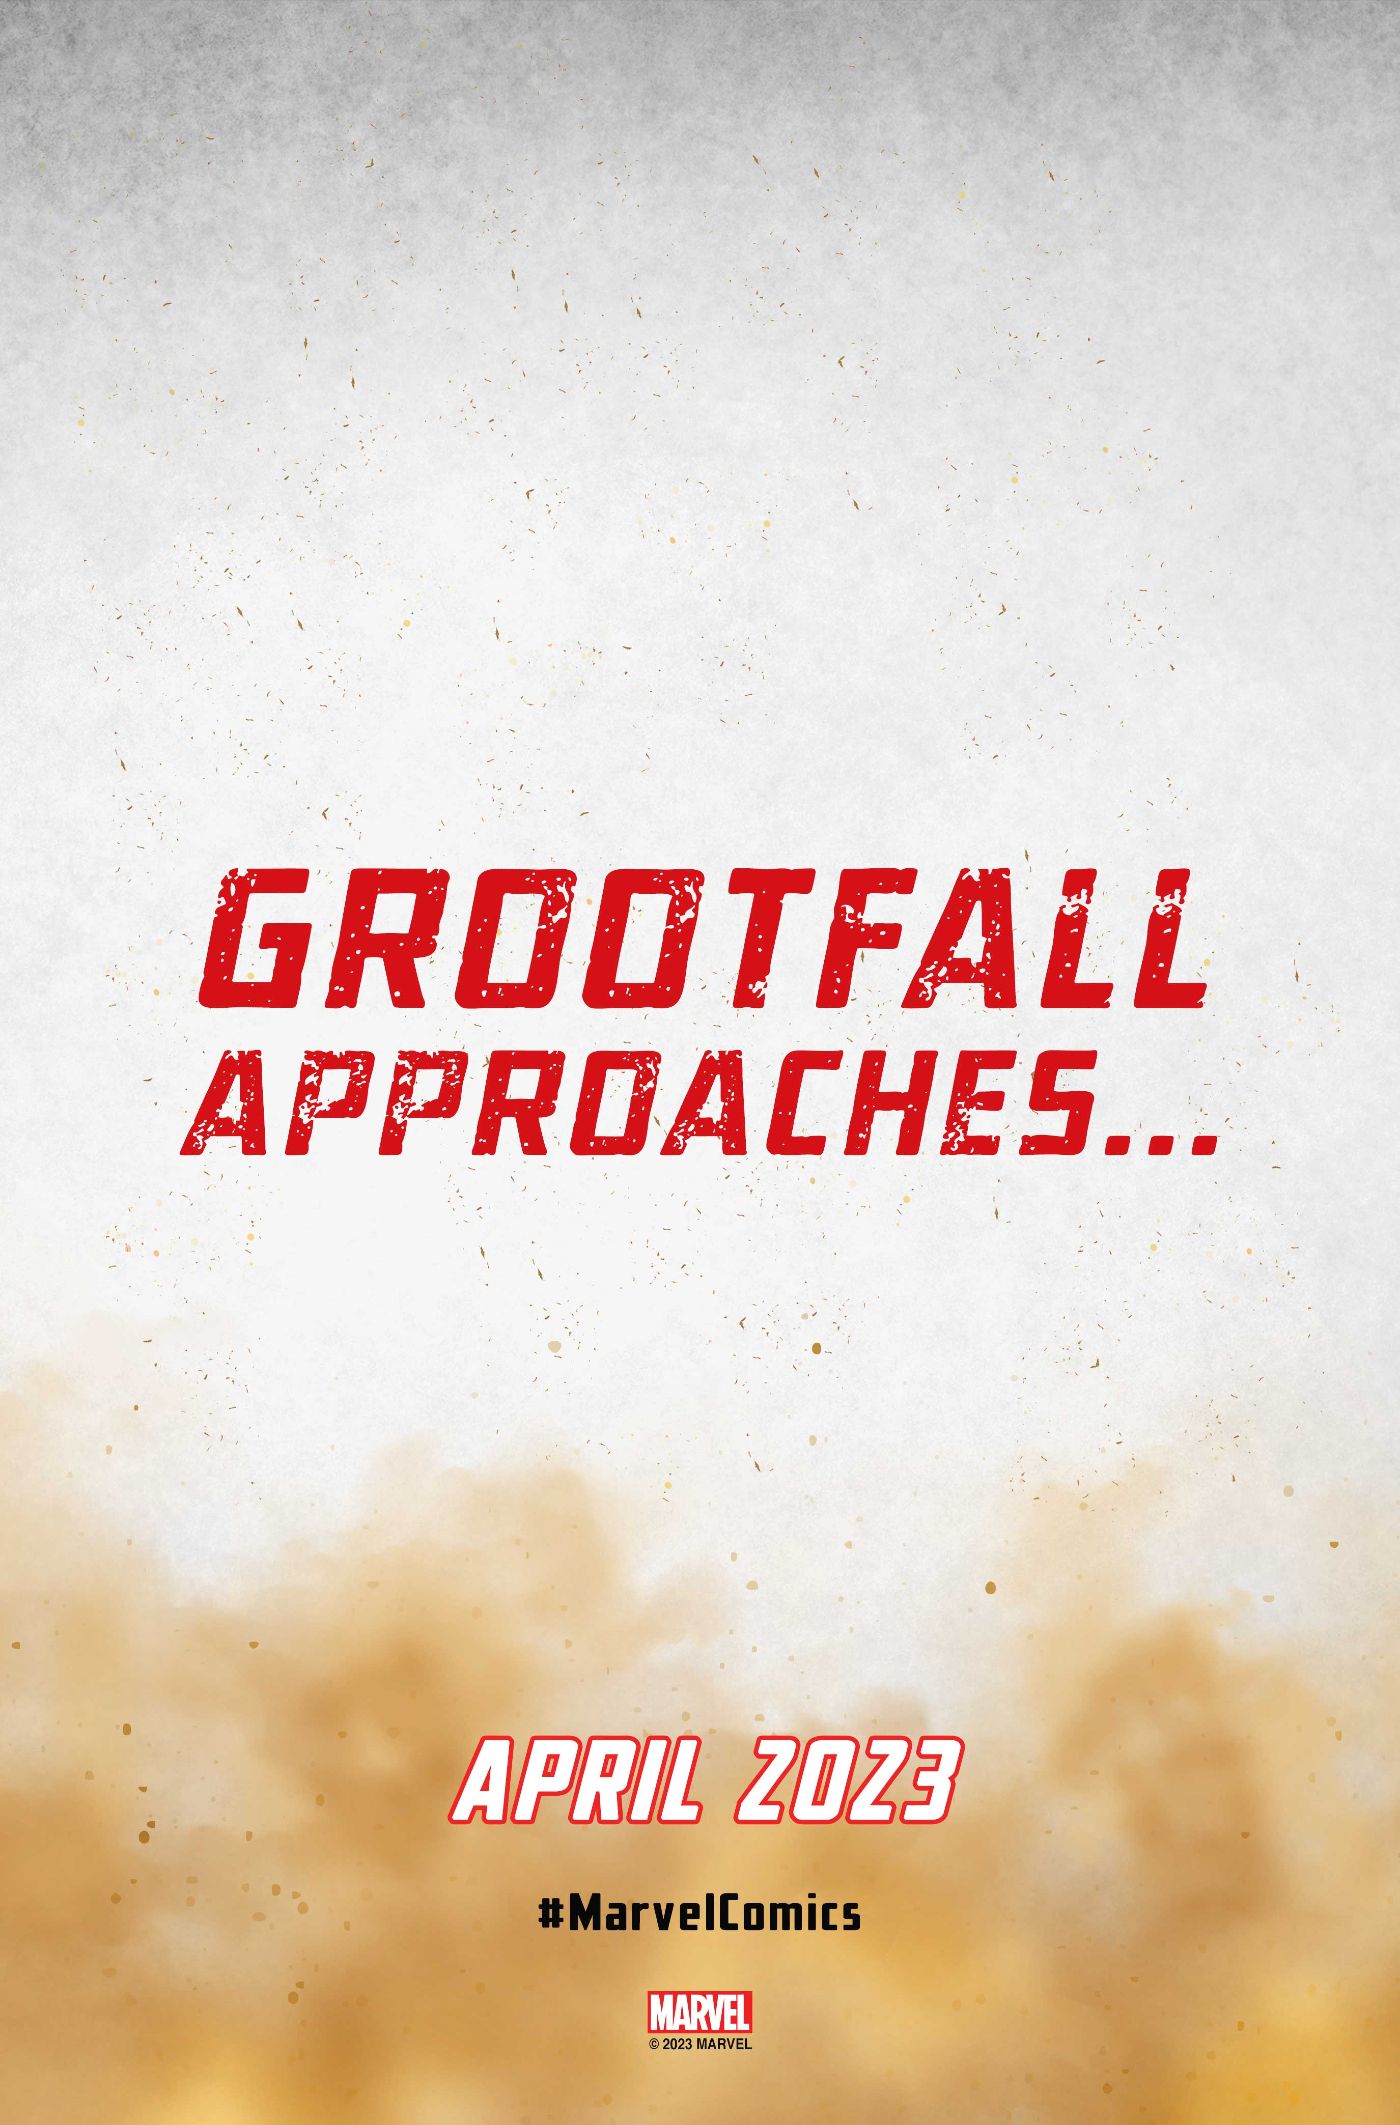 Grootfall teaser announcement